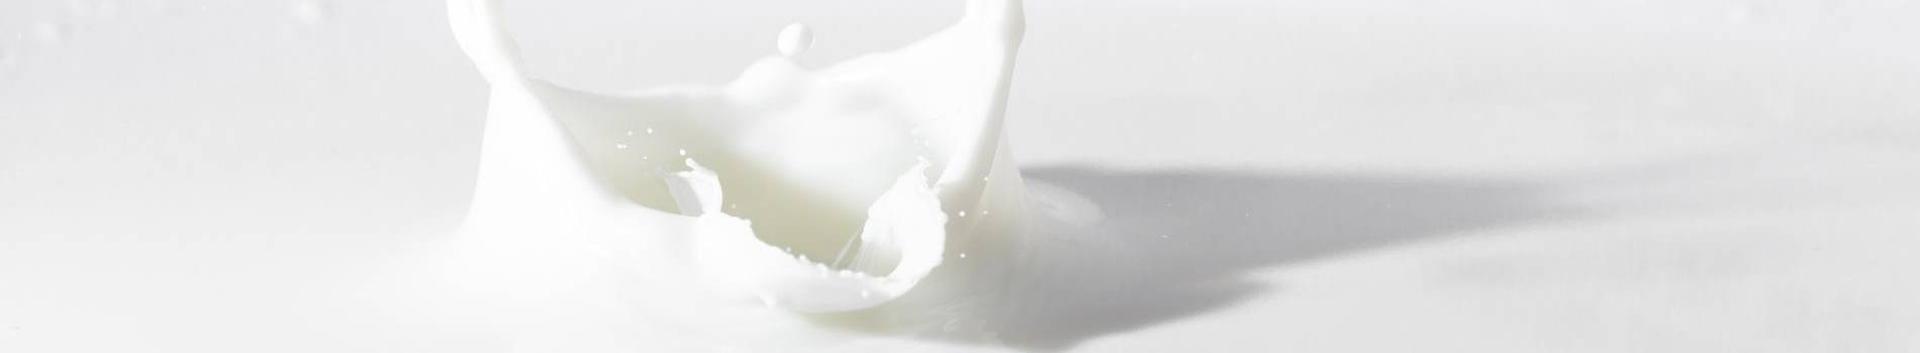 MilkEst OÜ on asutatud Tulundusühistu Epiko, Saaremaa Piimaühistu, AS-i Saaremaa Piimatööstus, Tulundusühistu Jõgevamaa